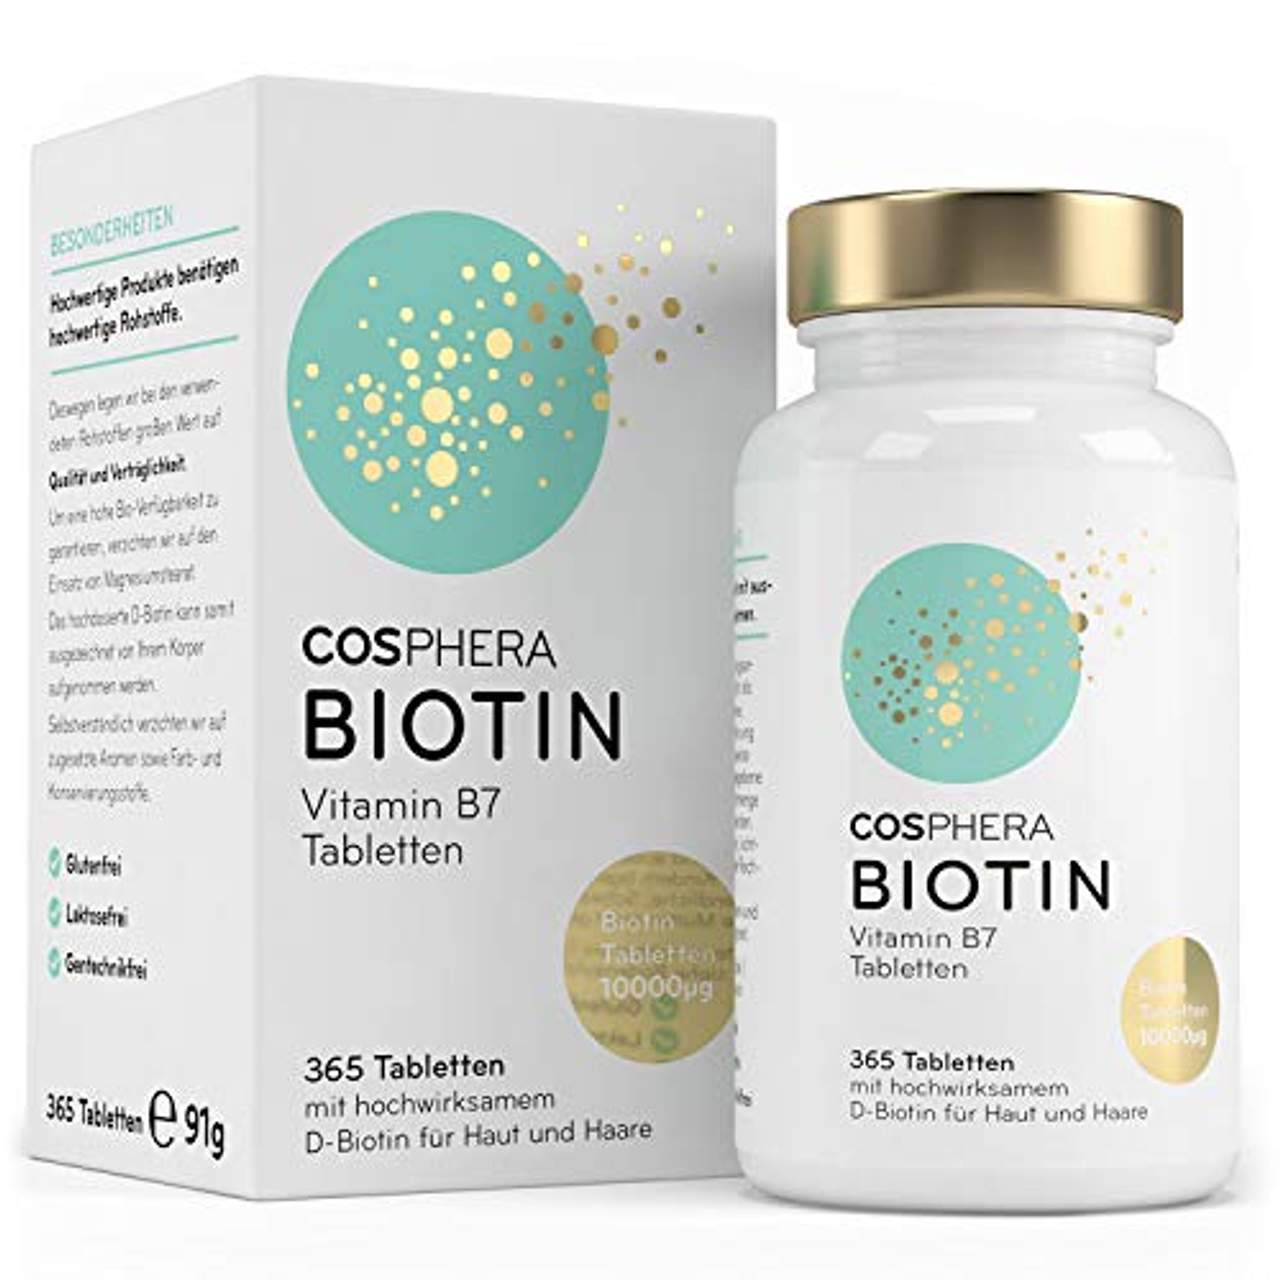 Cosphera Biotin Tabletten